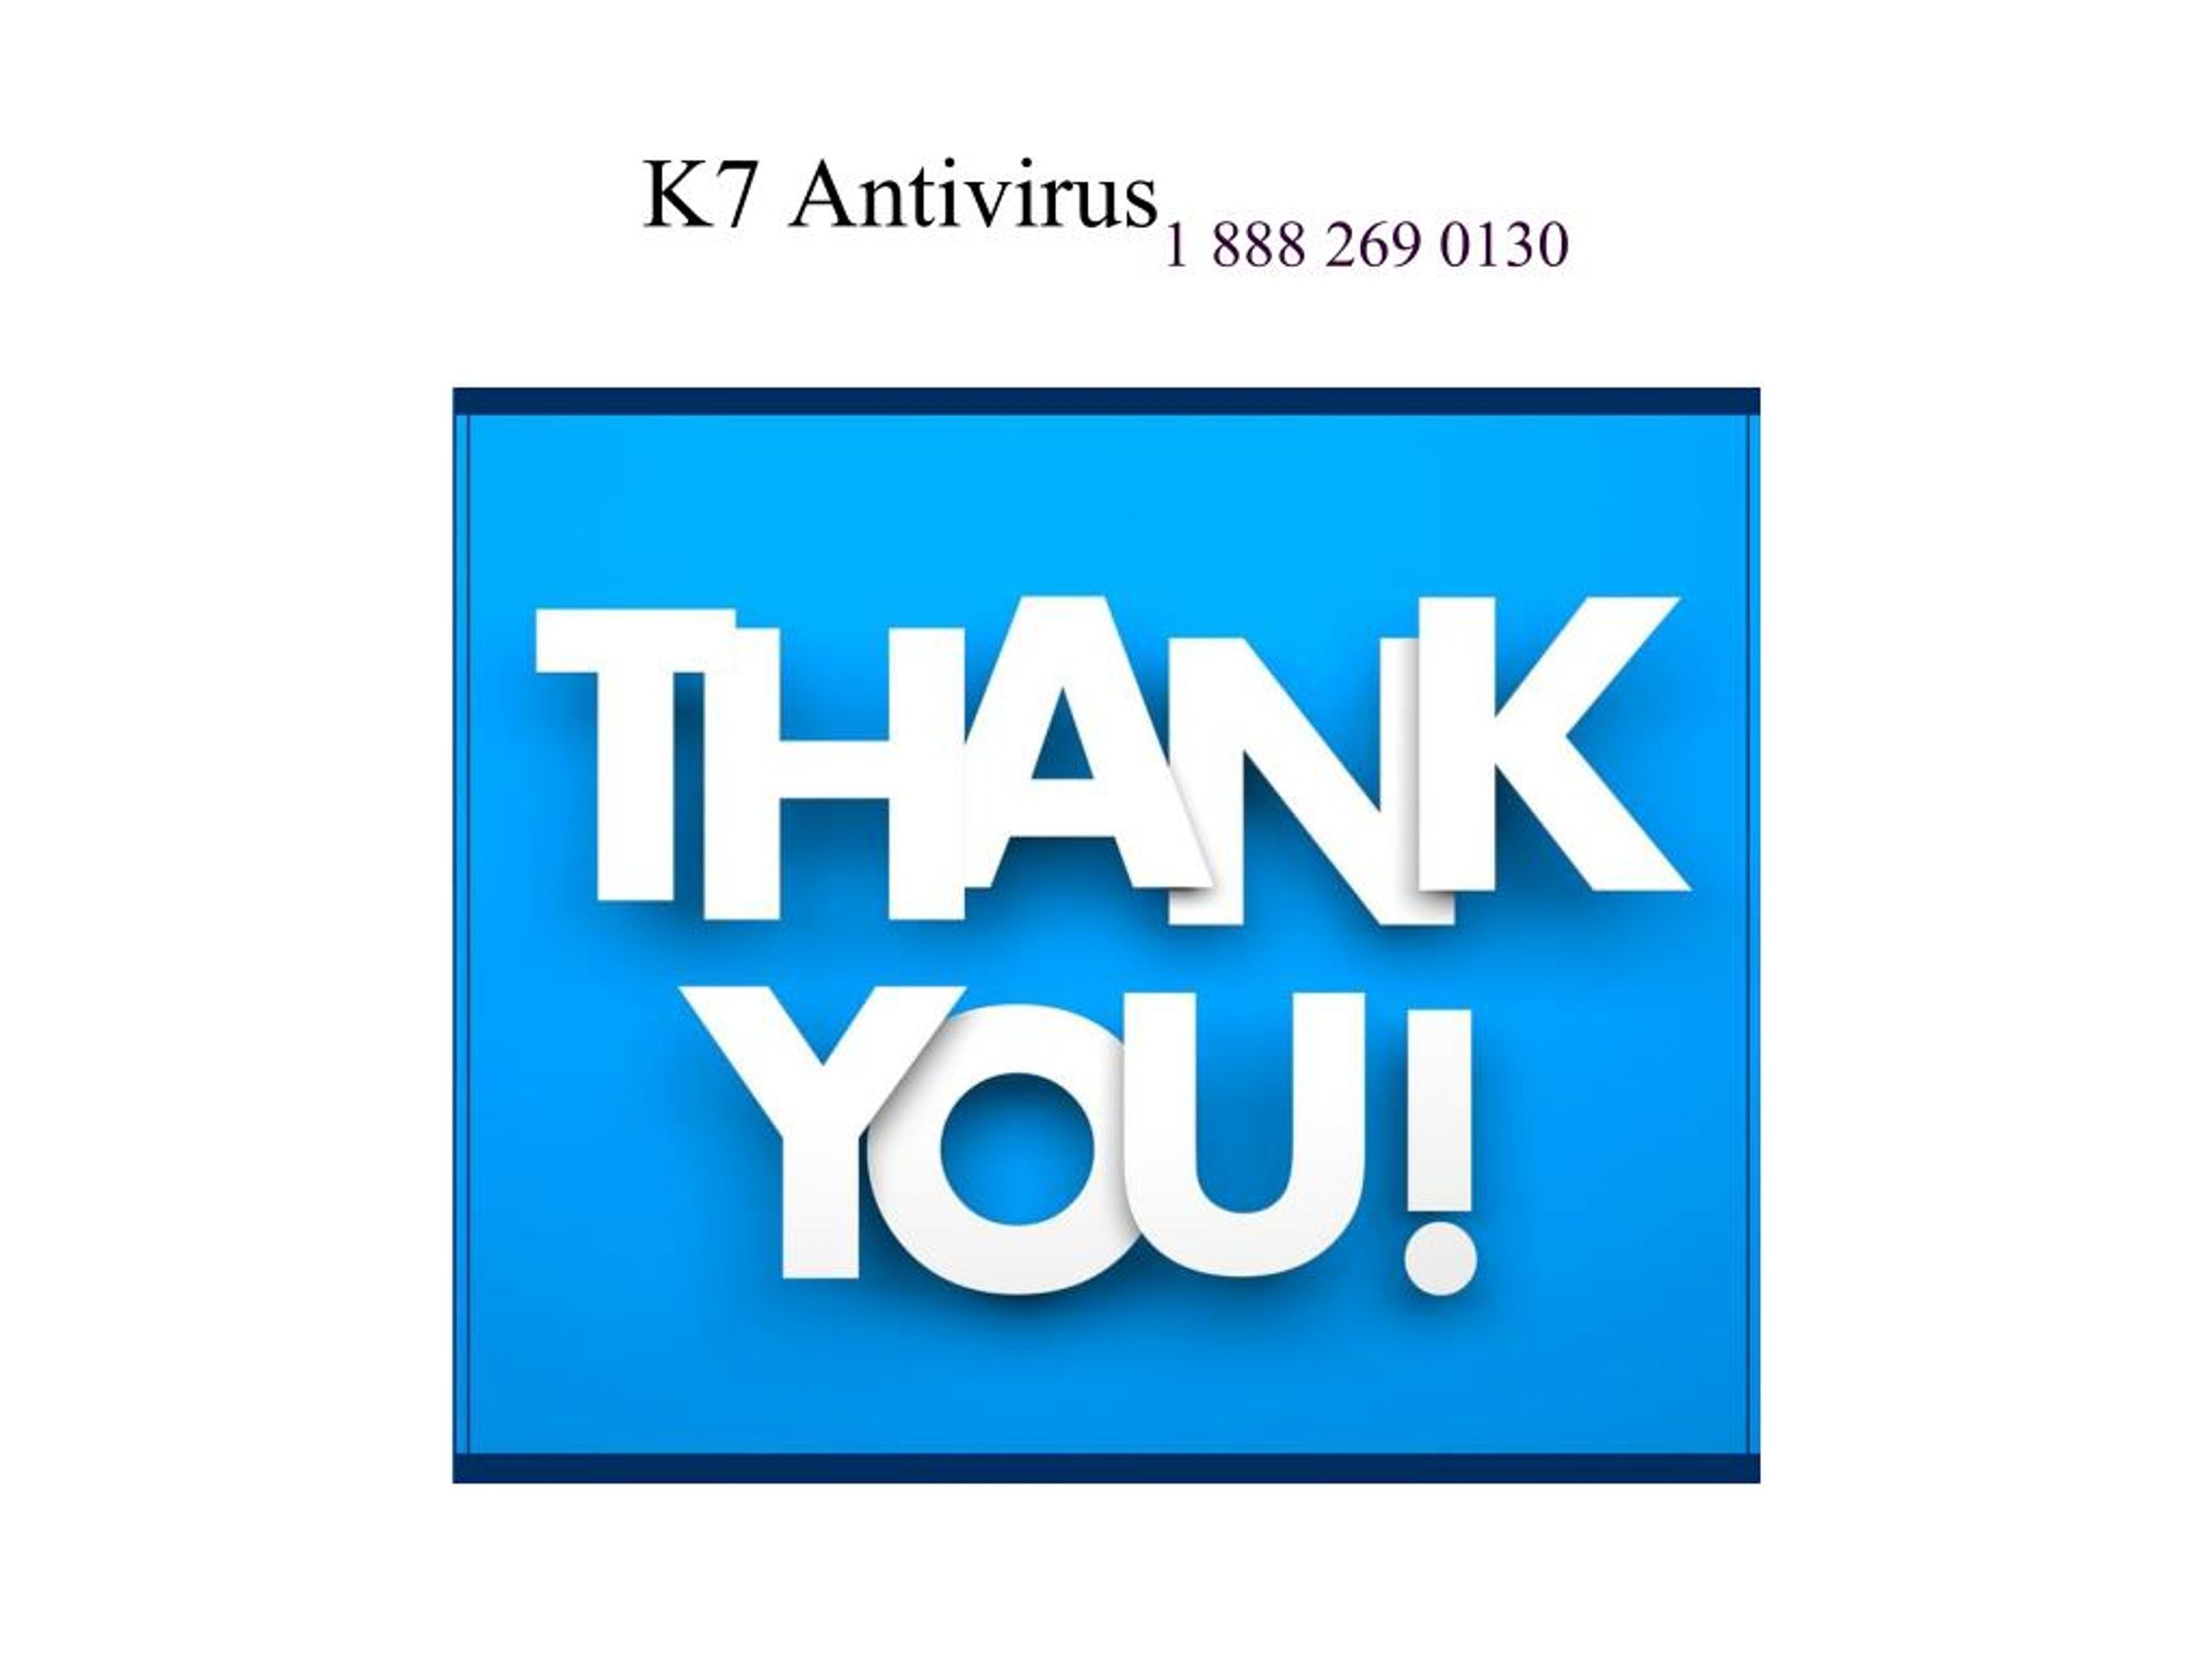 K av. Антивирус с логотипом x. Первый антивирус. Антивирус с жуком на логотипе. Aidstest антивирус логотип.